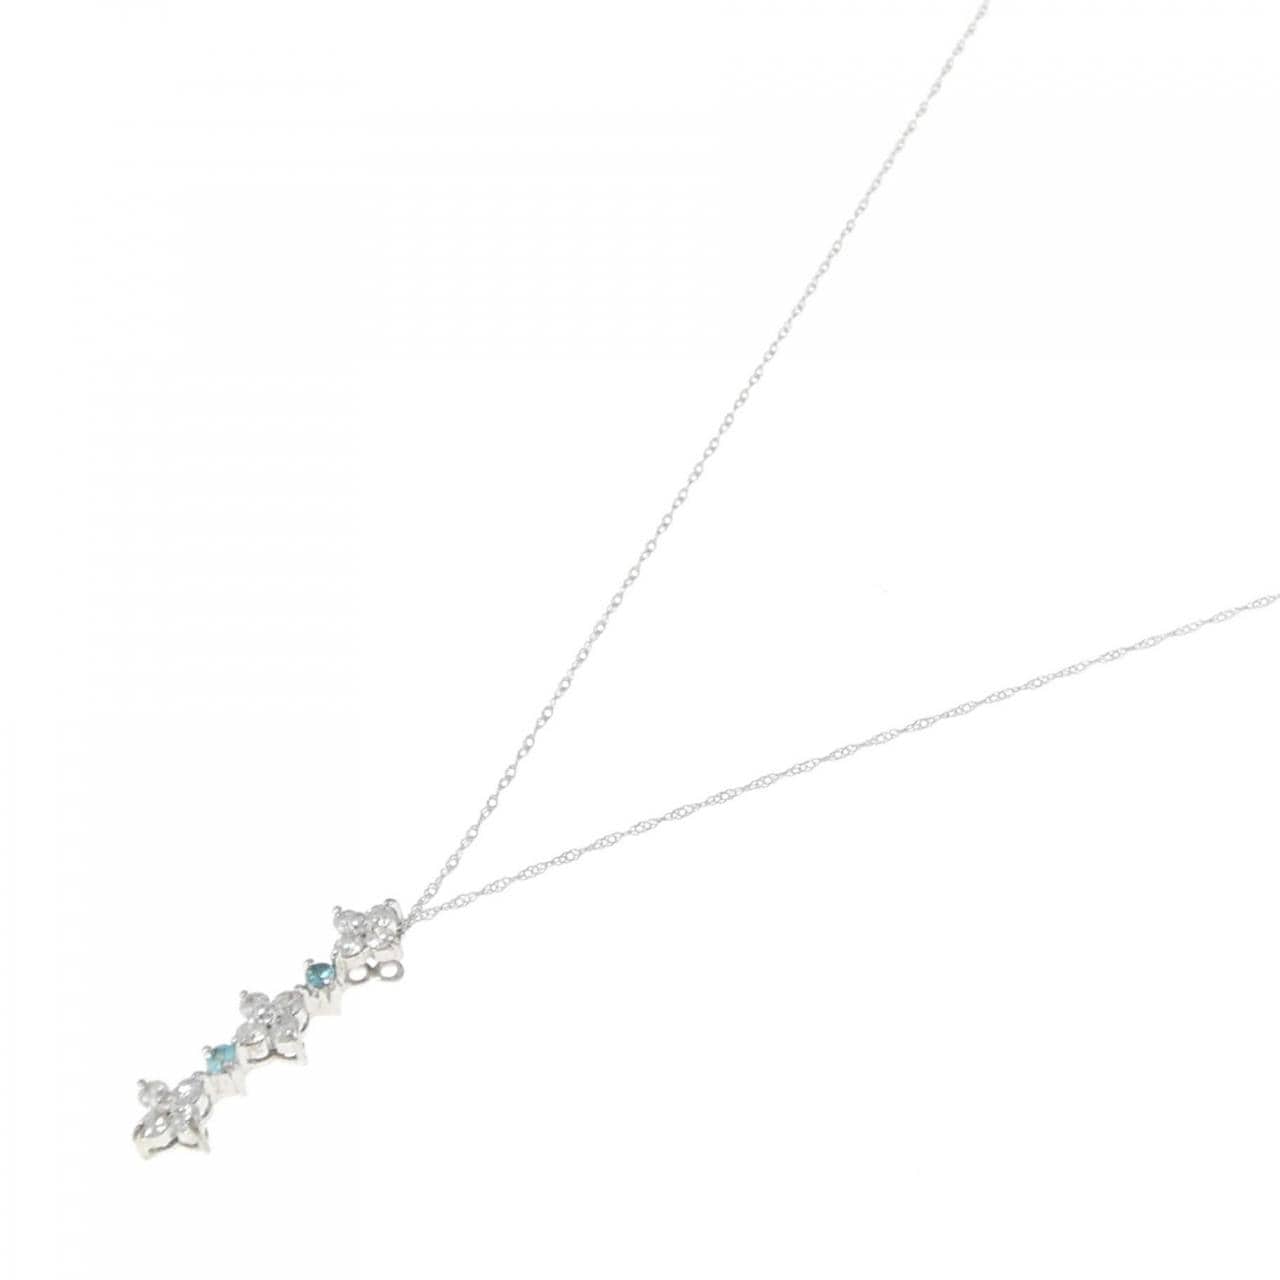 K18WG Tourmaline necklace 0.04CT